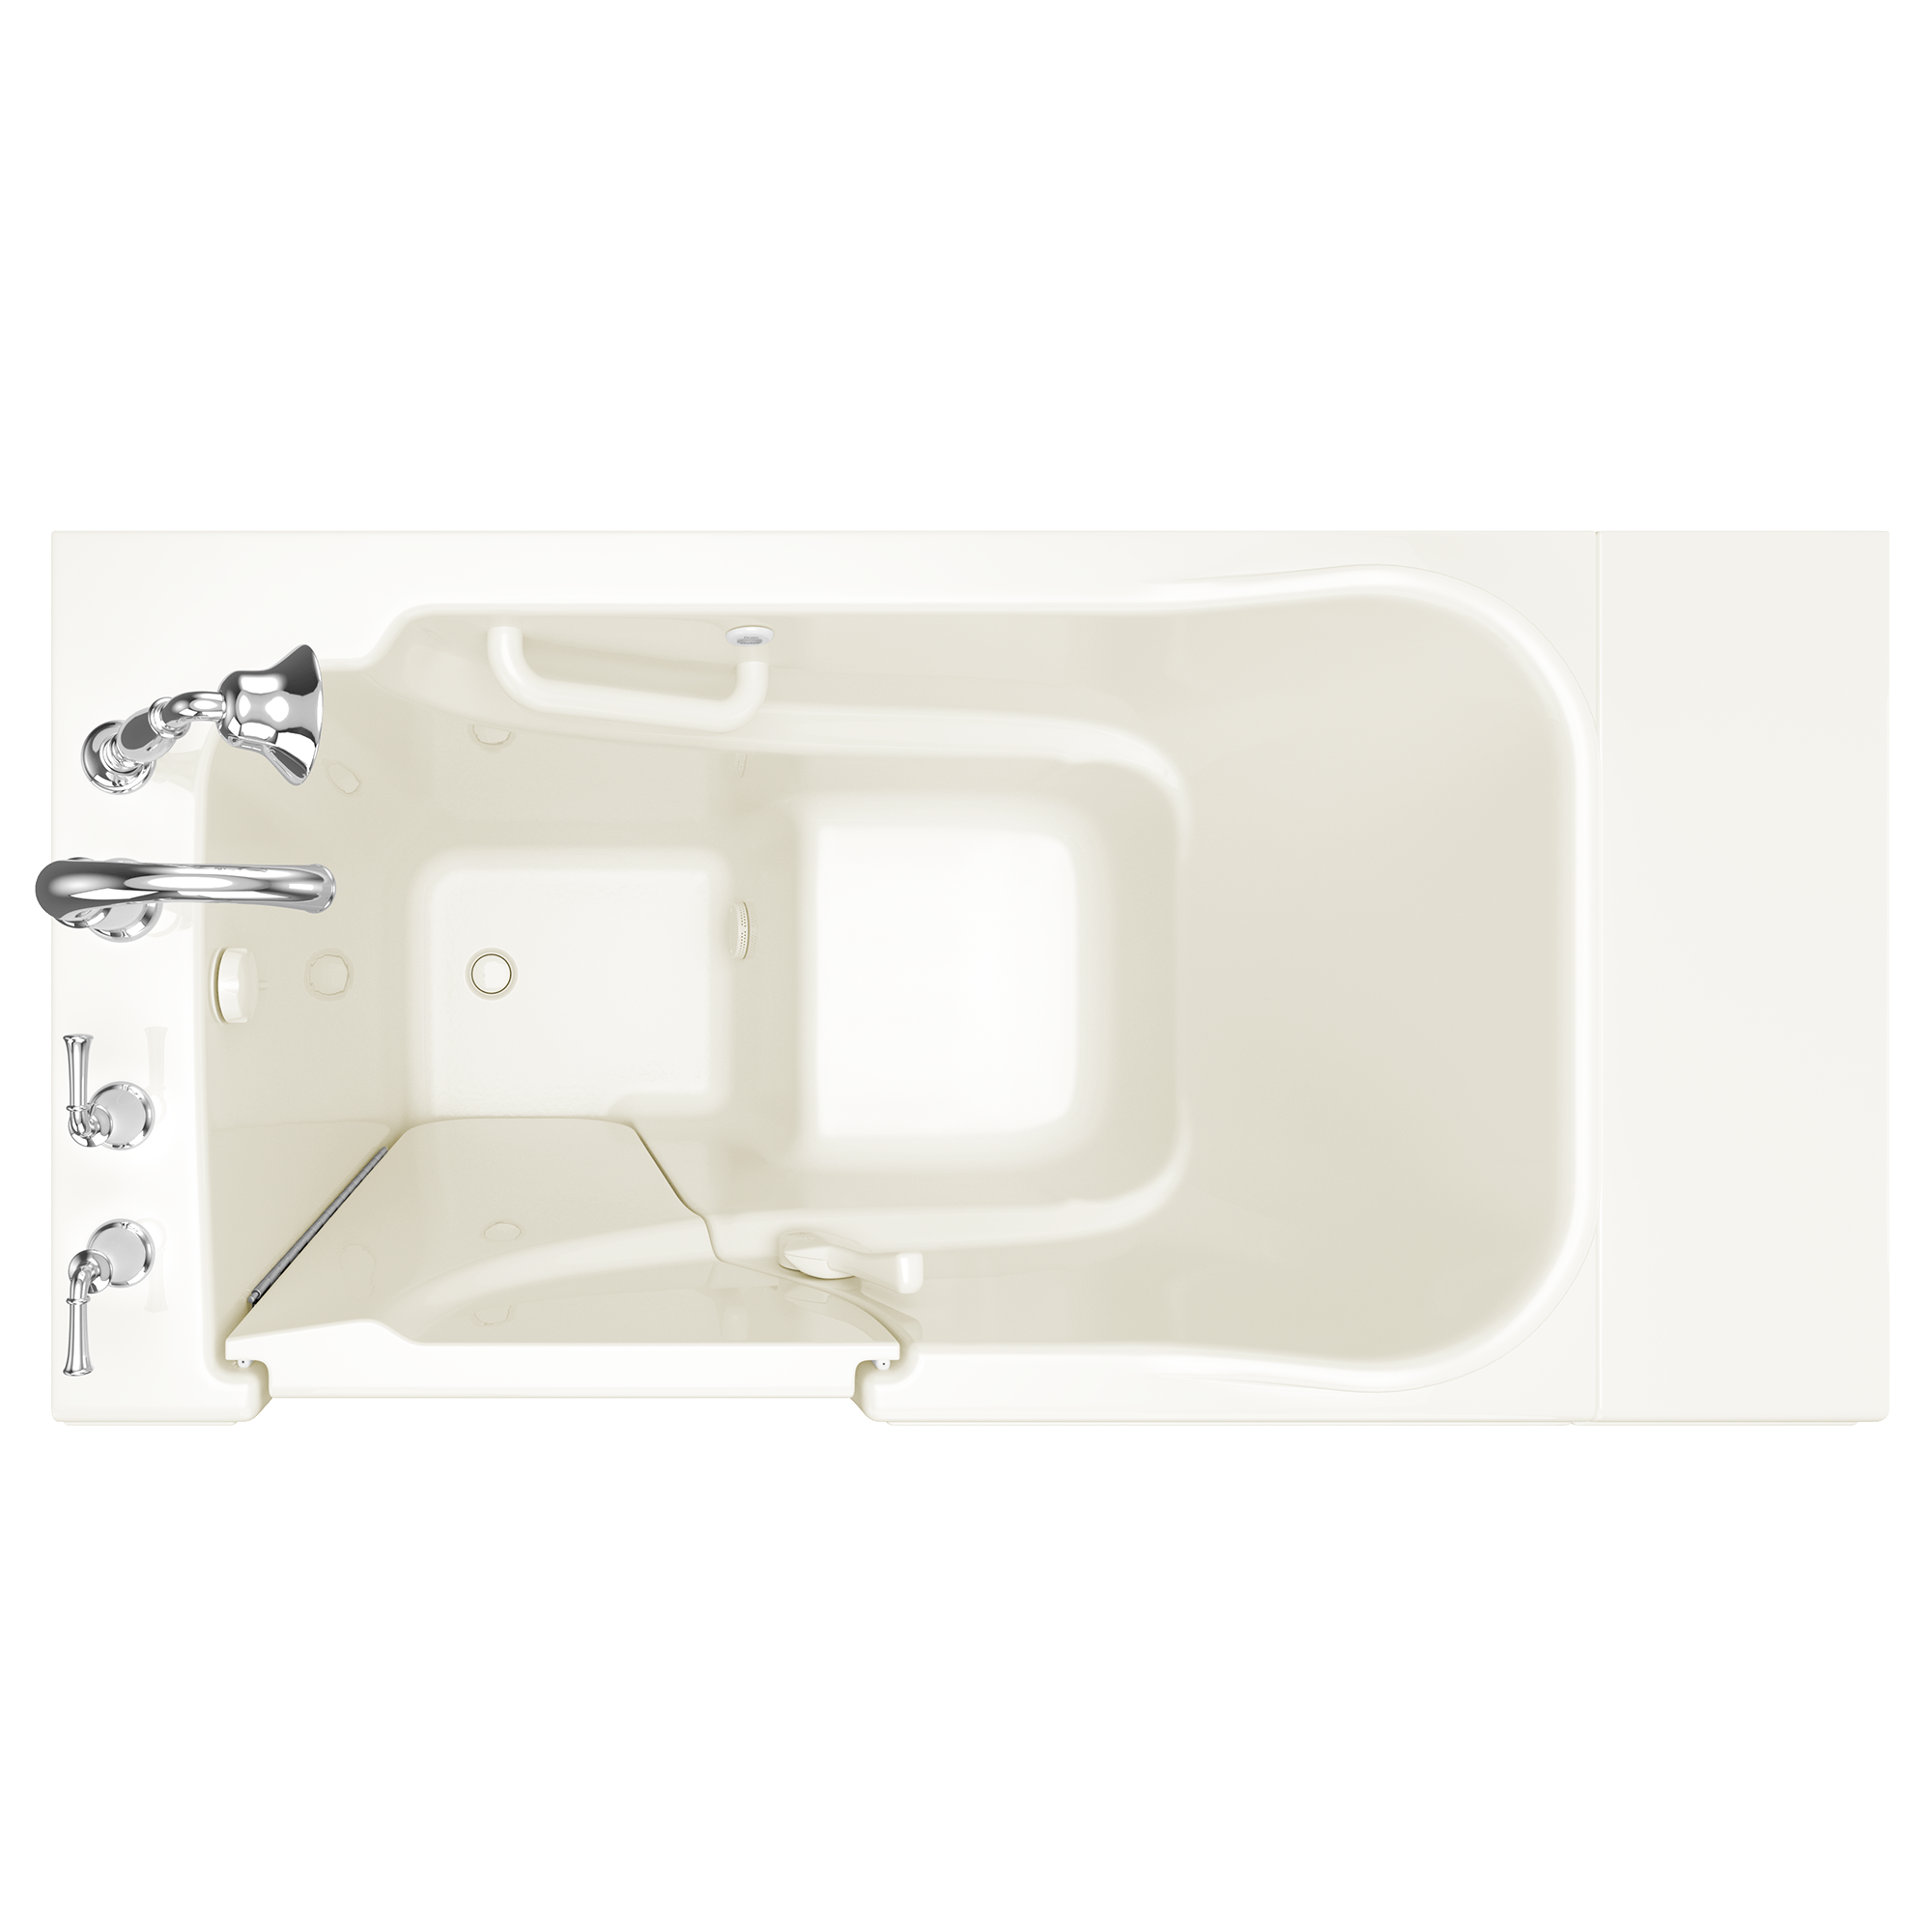 Gelcoat Value Series 30x52 Inch Soaking Walk-In Bathtub - Left Hand Door and Drain